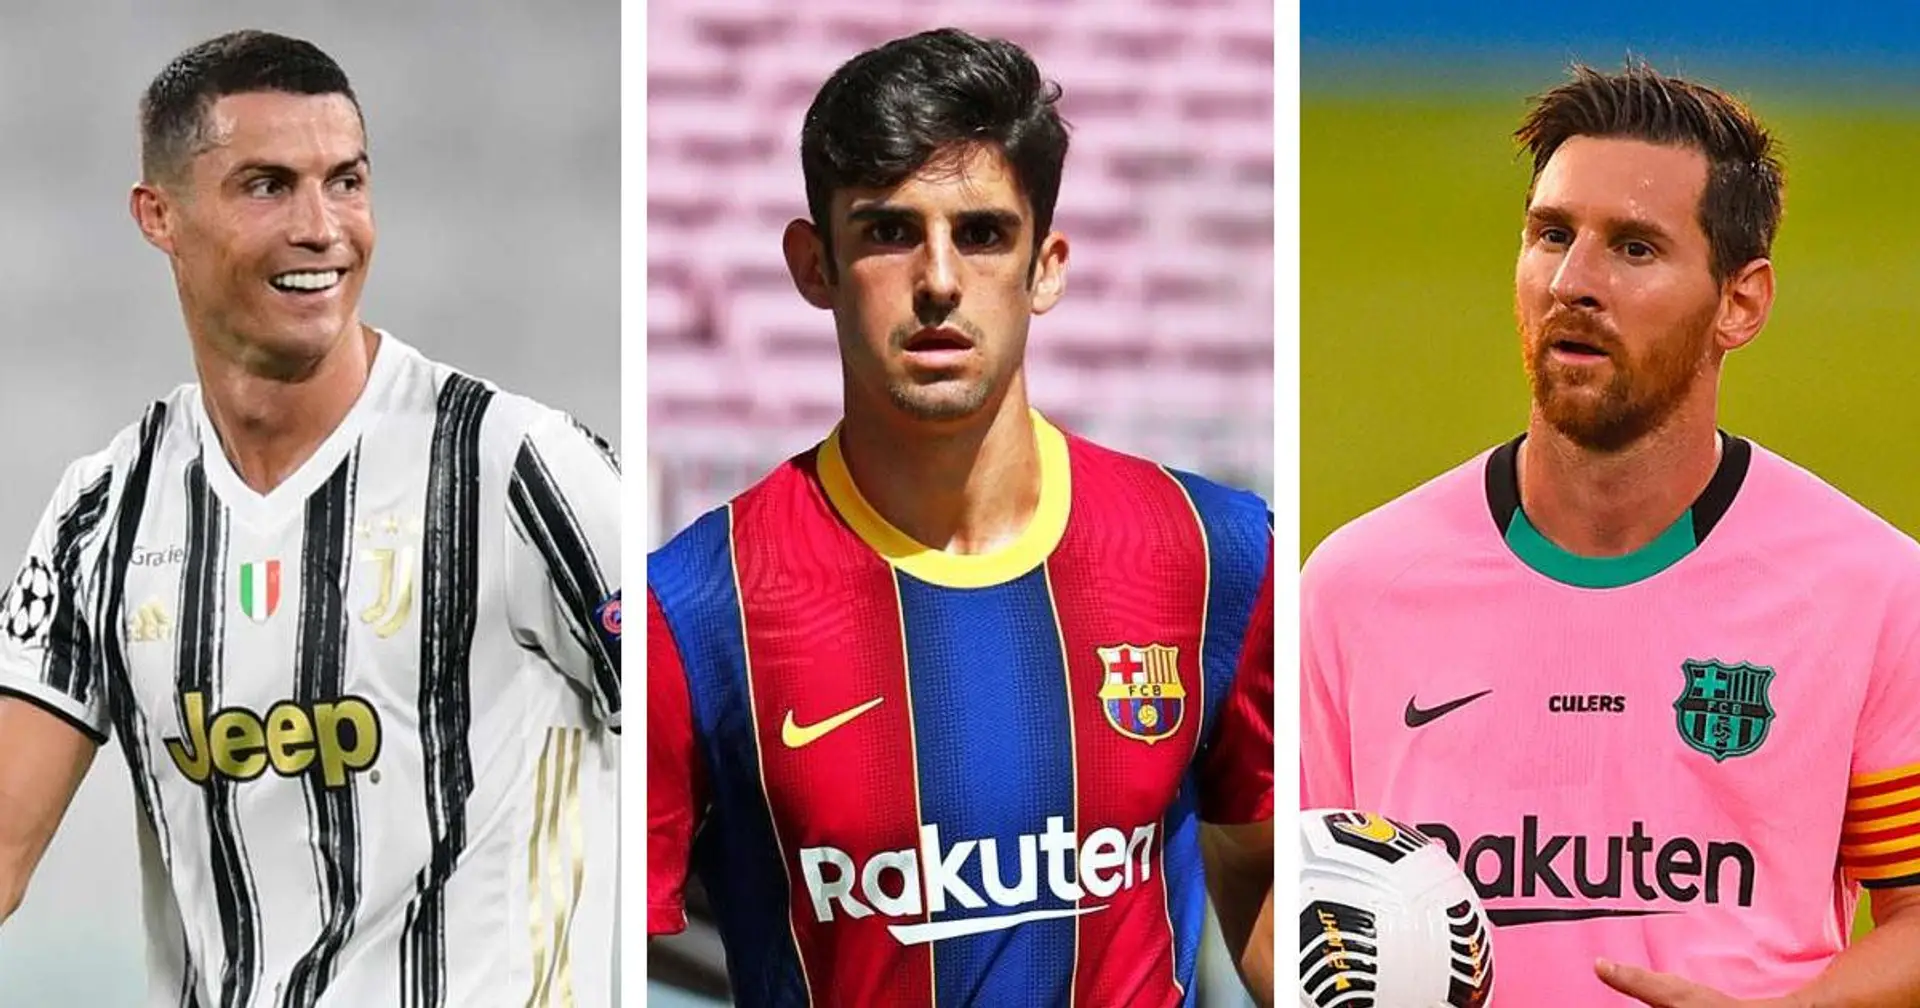 Messi et Ronaldo sont des idoles pour Trincao: 4 choses que le nouveau joyau du Barca a dans son jeu des 2 grandes stars 